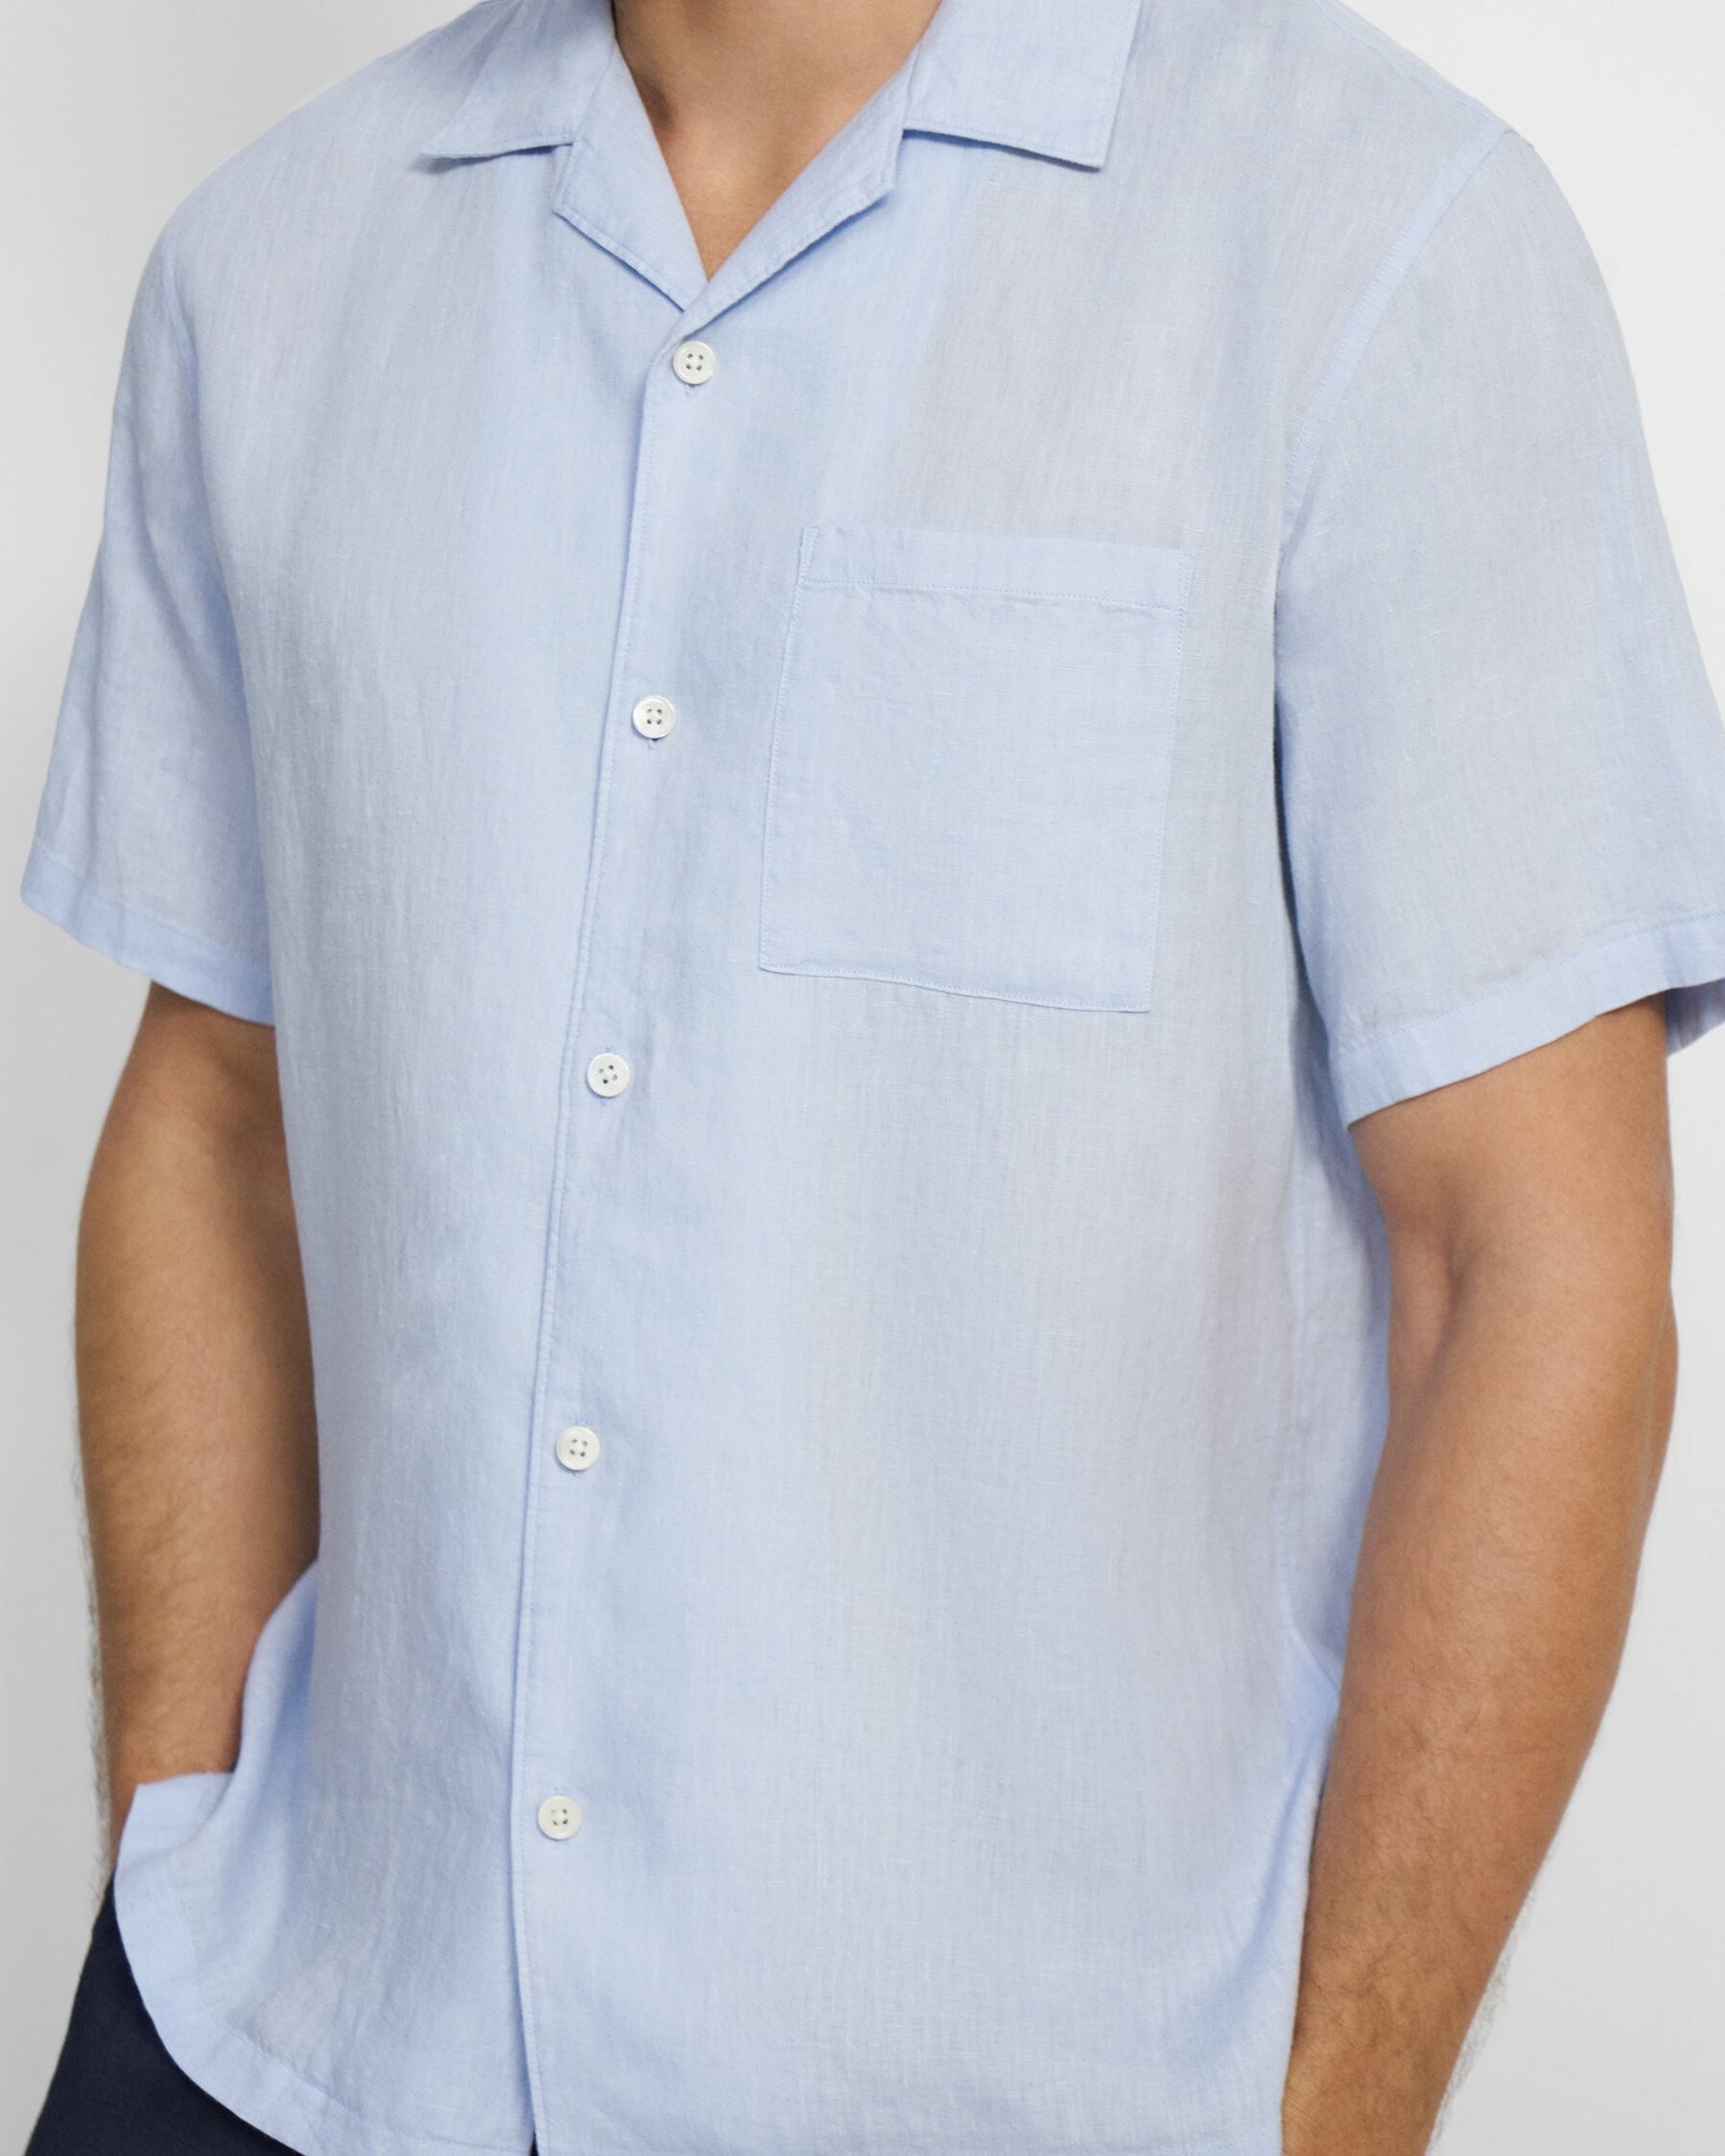 Noll Short-Sleeve Shirt in Linen Twill